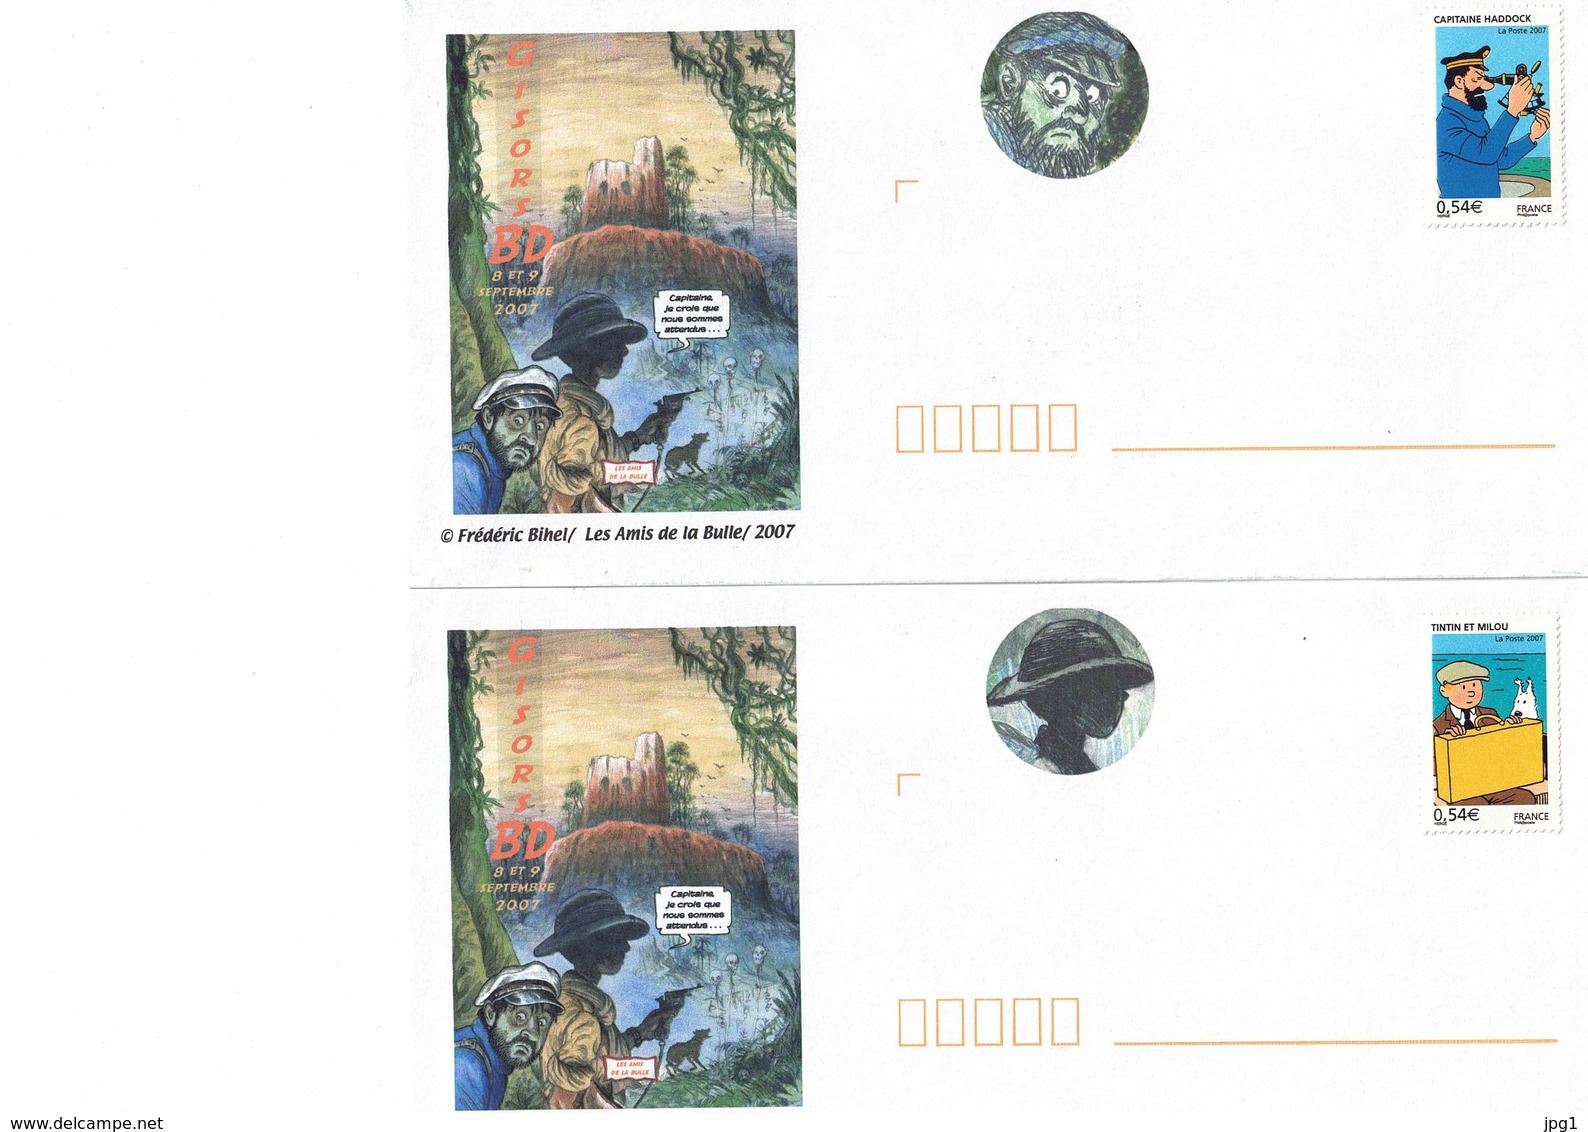 TINTIN : Deux Enveloppes Vierges Avec Timbres Tintin. Peuvent Servir Au Courrier Uniquement En France. - Comics